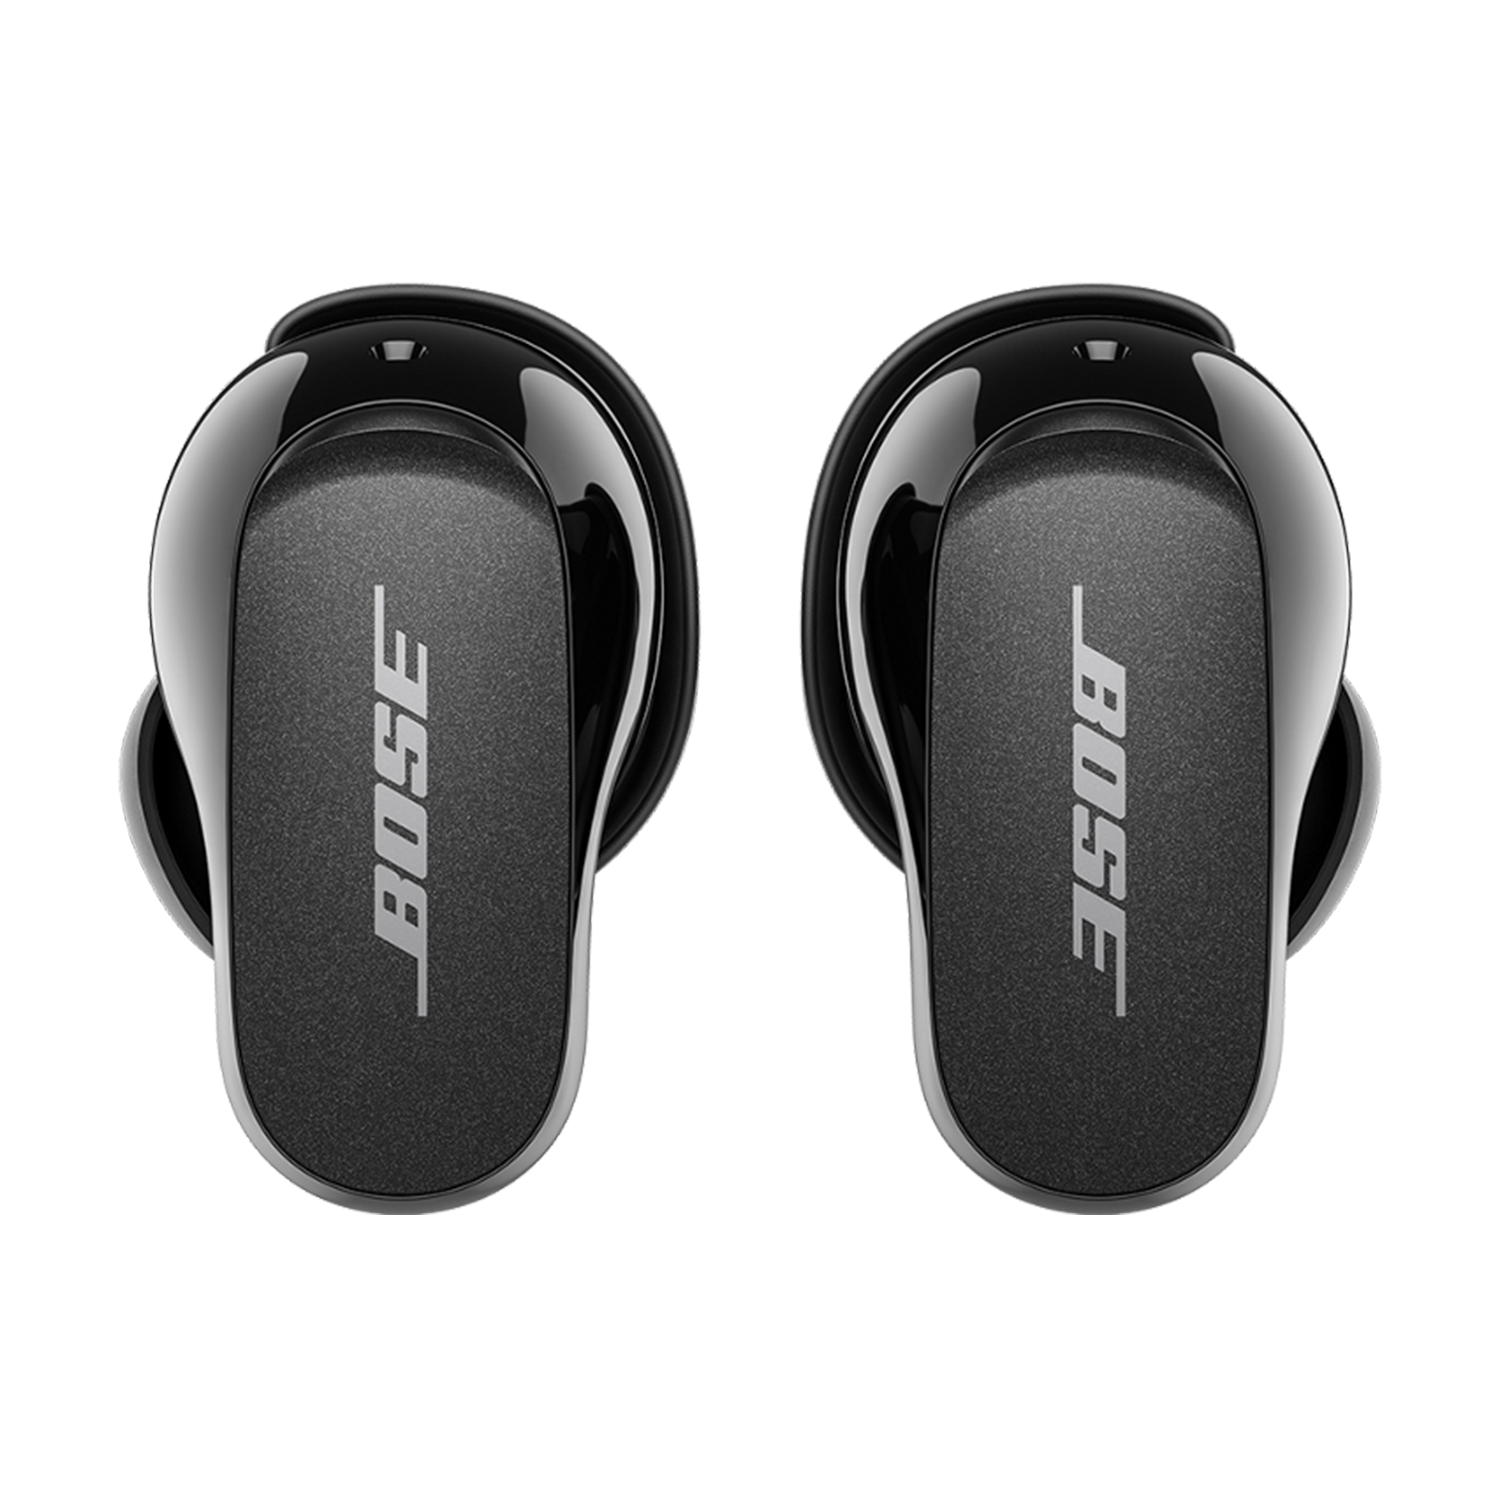 Bose QuietComfort : Date de sortie, prix et caractéristiques, ne manquez  pas nos informations exclusives à propos des prochains casques et écouteurs